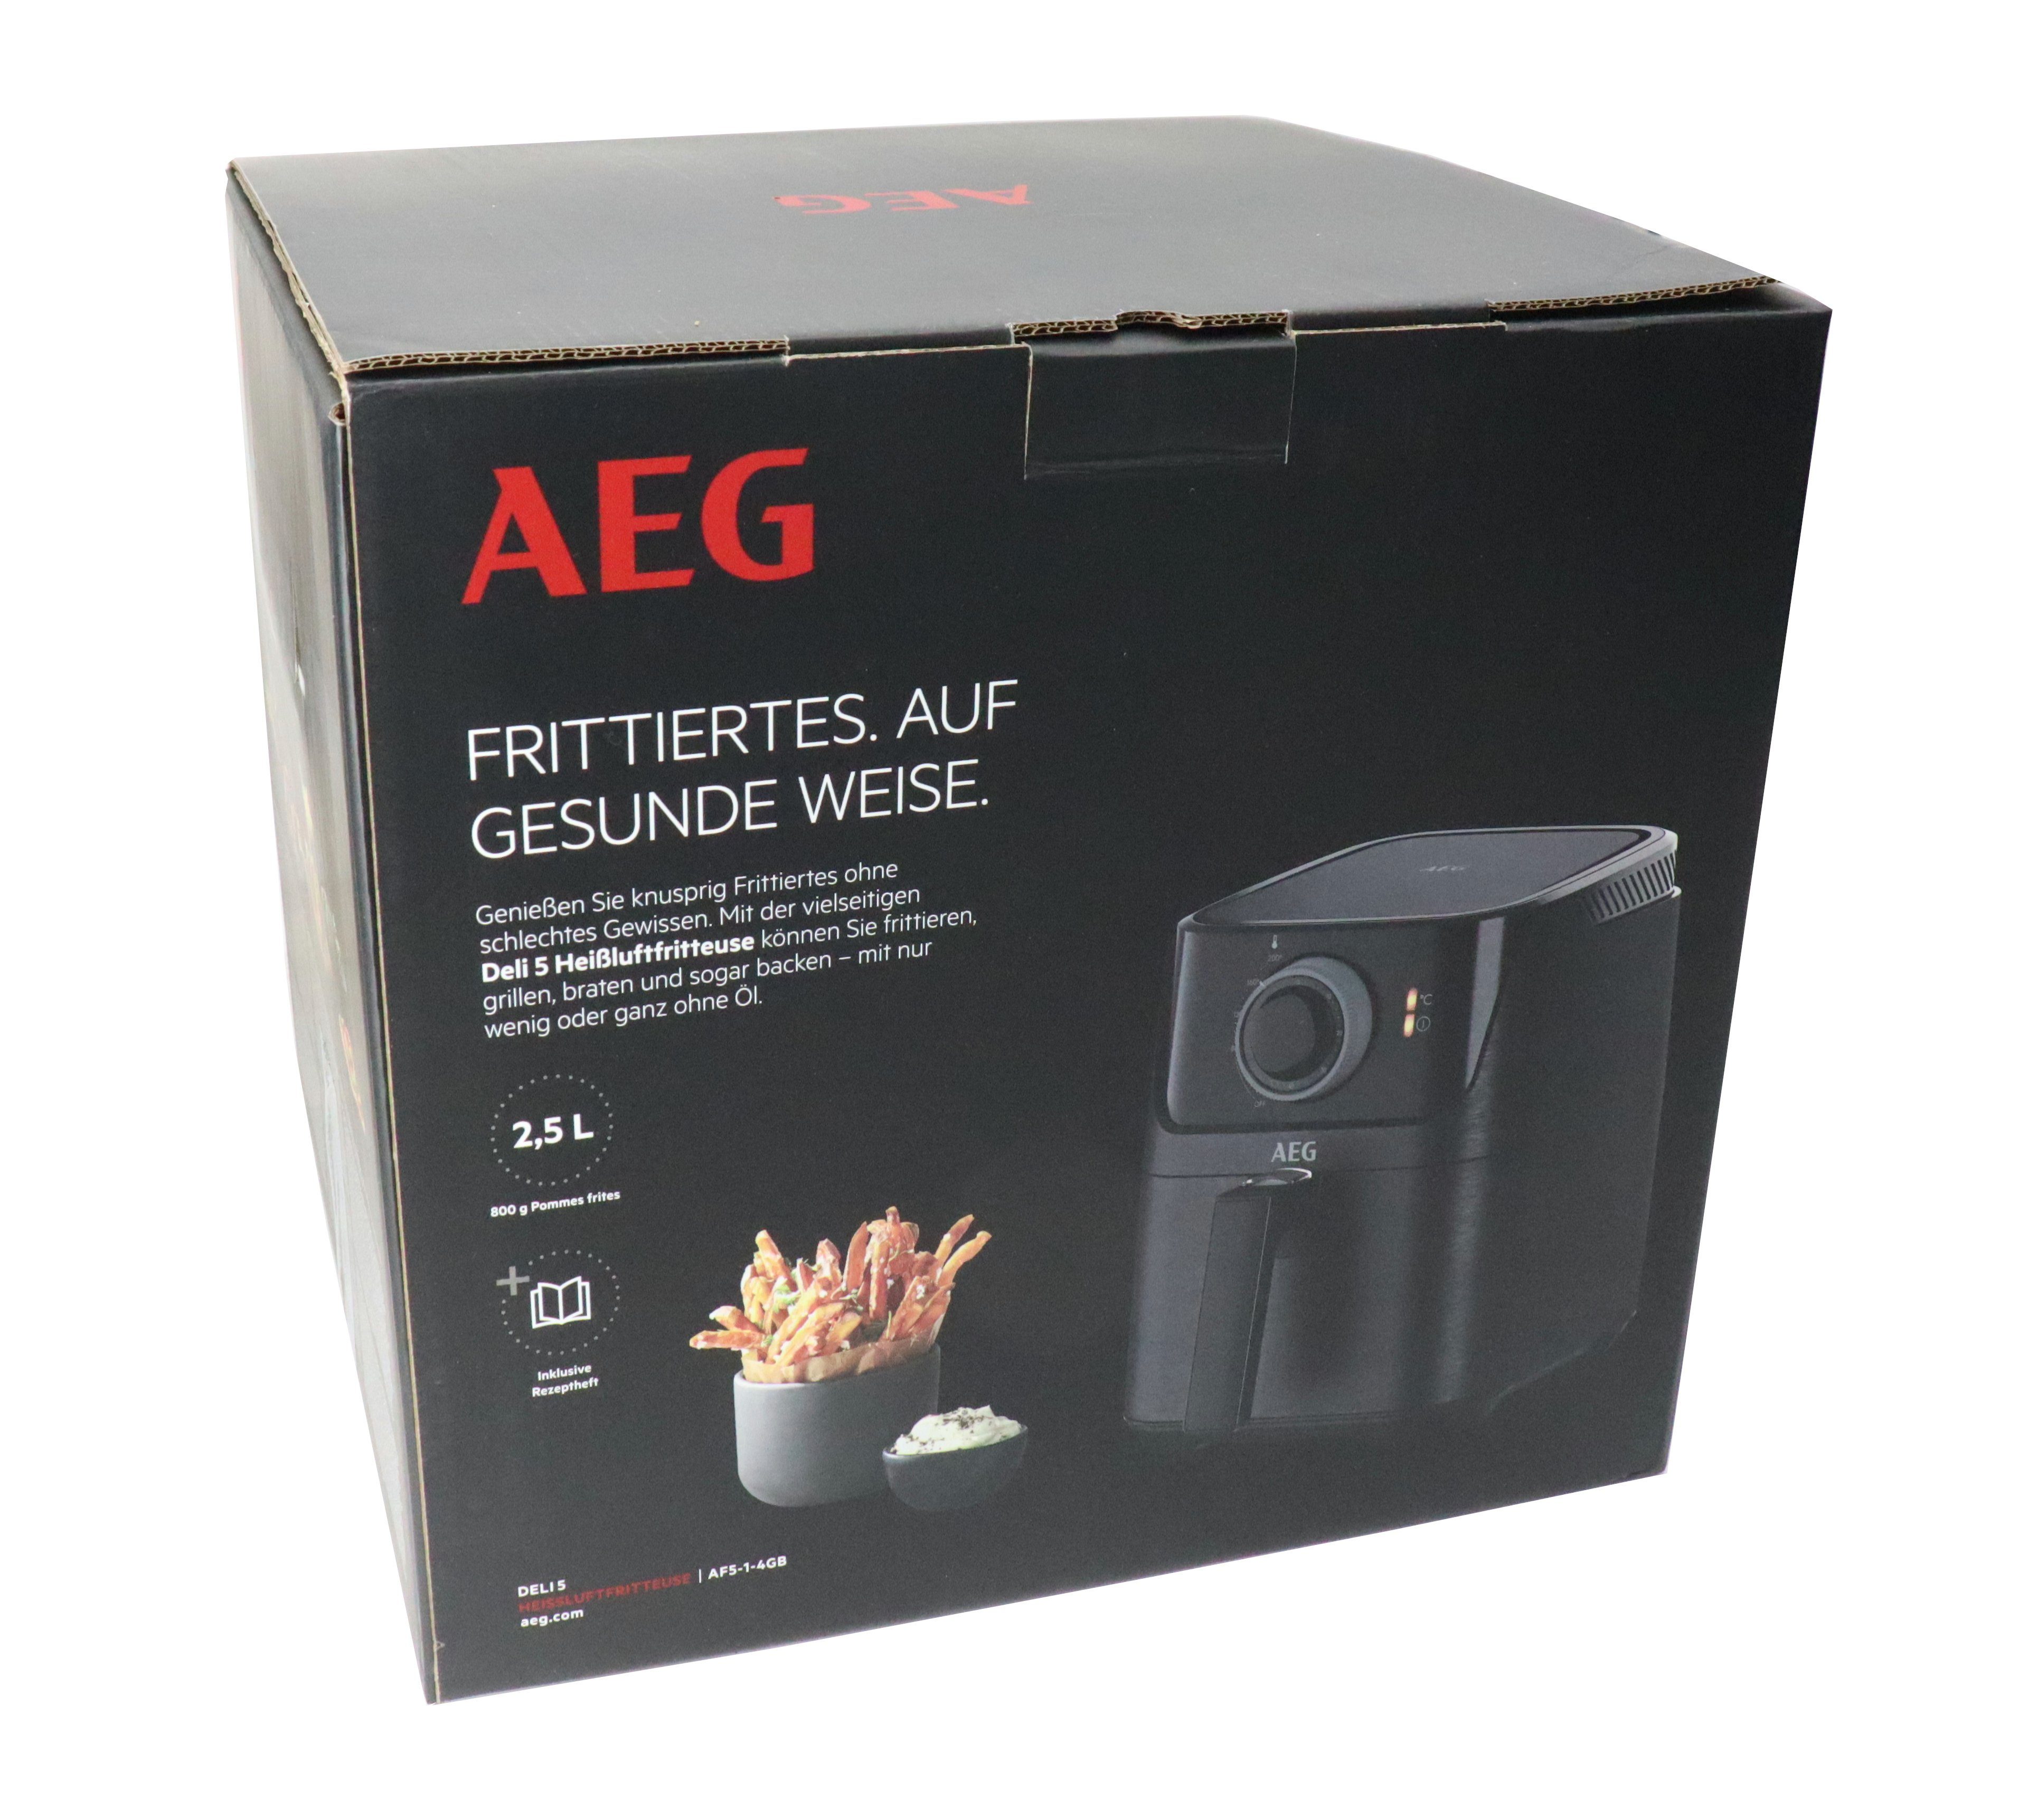 AEG Heißluftfritteuse AEG Heißluftfritteuse AF5-1-4GB